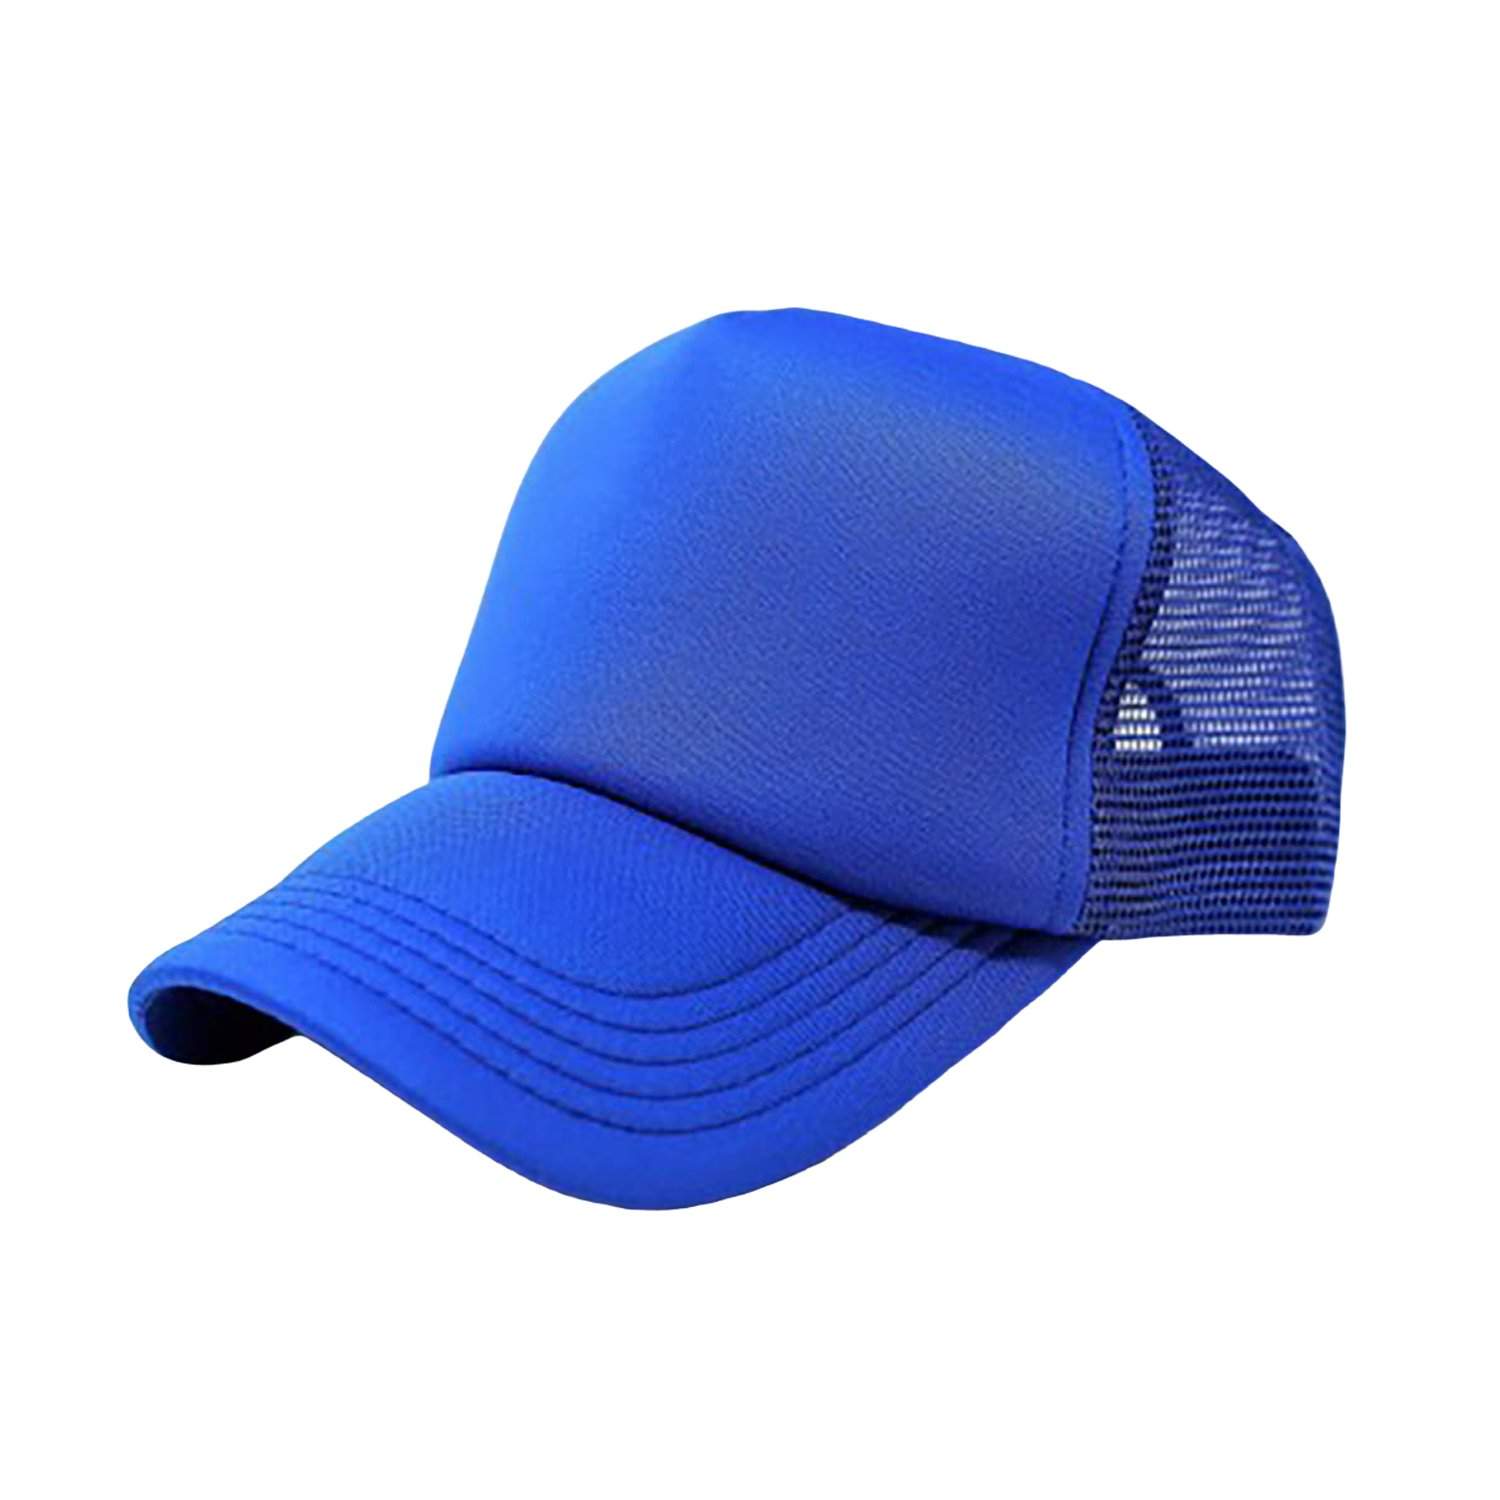 Pack of 3 Mechaly Trucker Hat Adjustable Cap